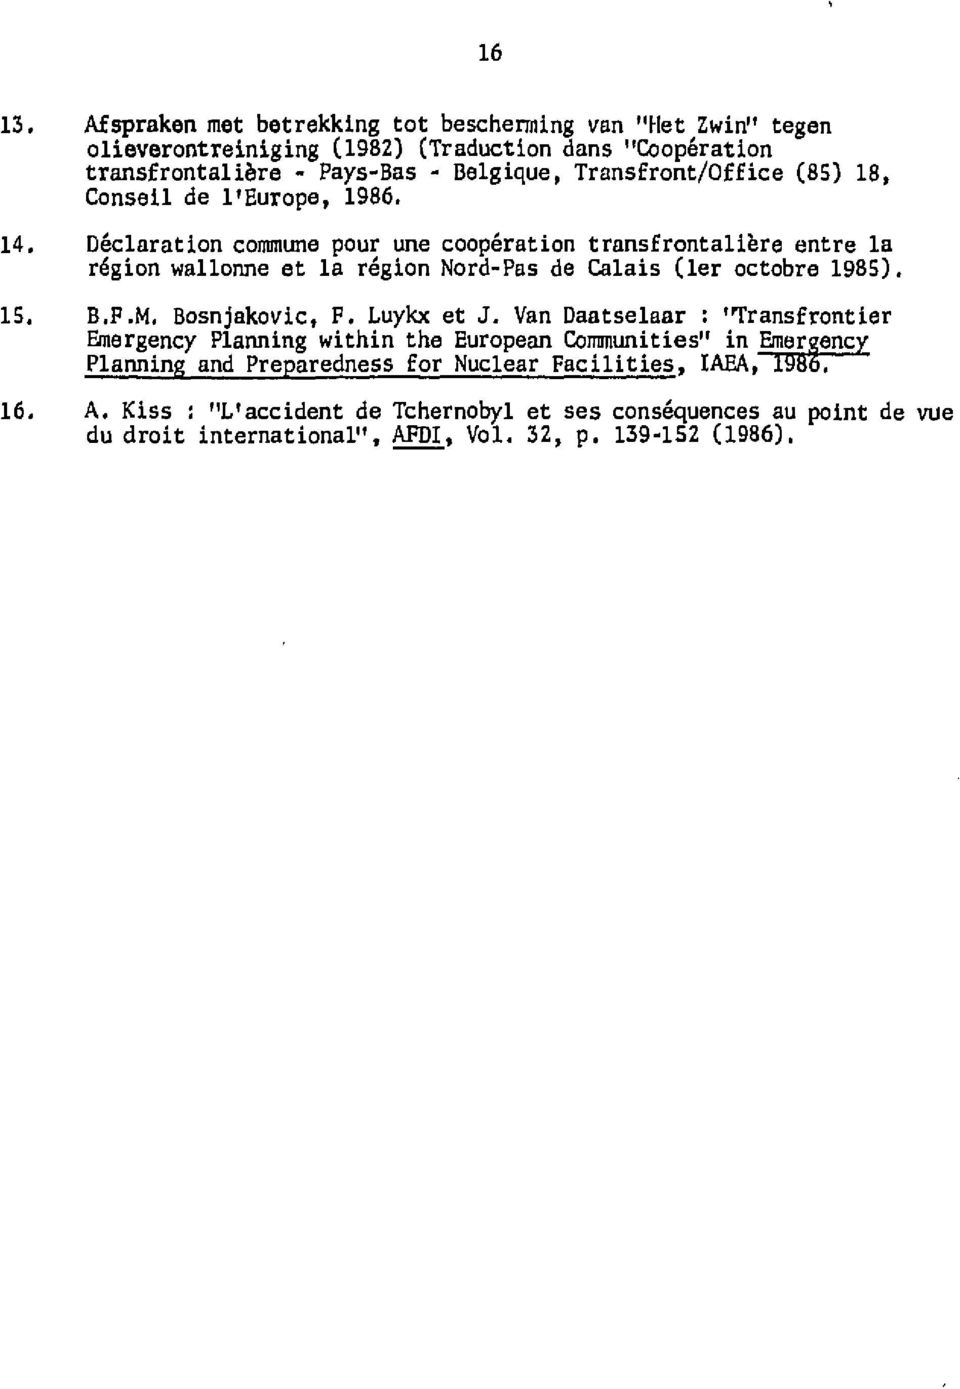 Déclaration commune pour une coopération transfrontalière entre la région wallonne et la région Nord-Pas de Calais (1er octobre 1985). 15. B.F.M. Bosnjakovic, F. Luykx et J.